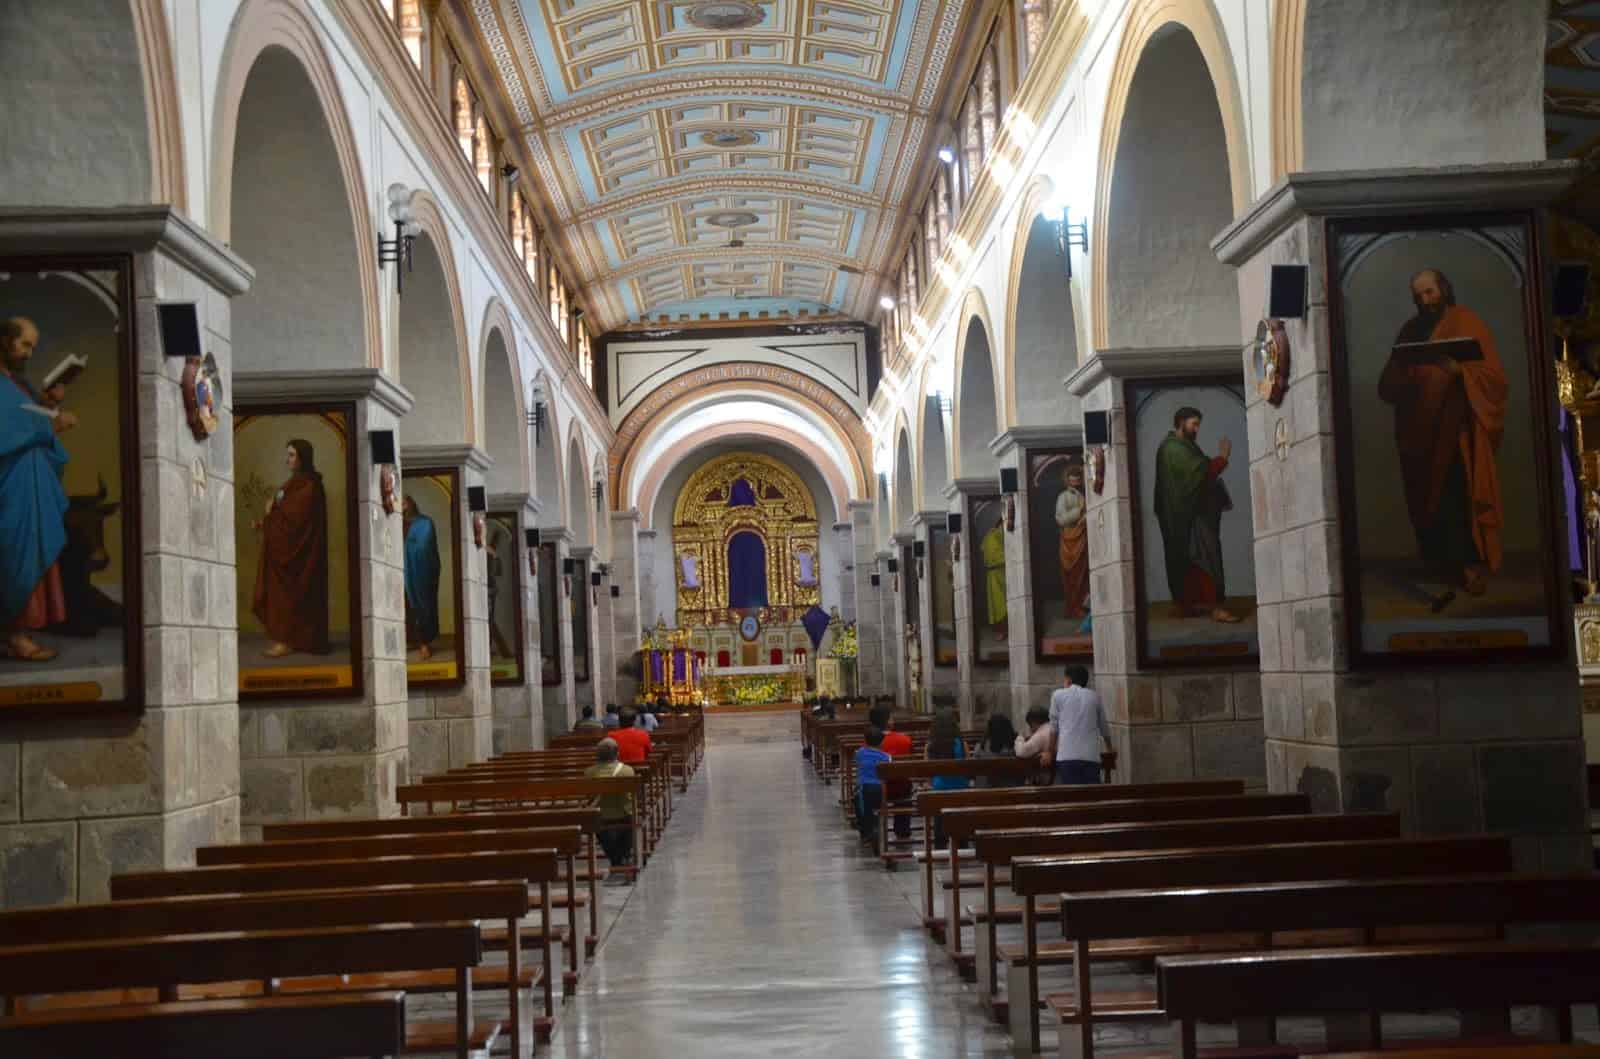 Cathedral on Parque Pedro Moncayo in Ibarra, Ecuador